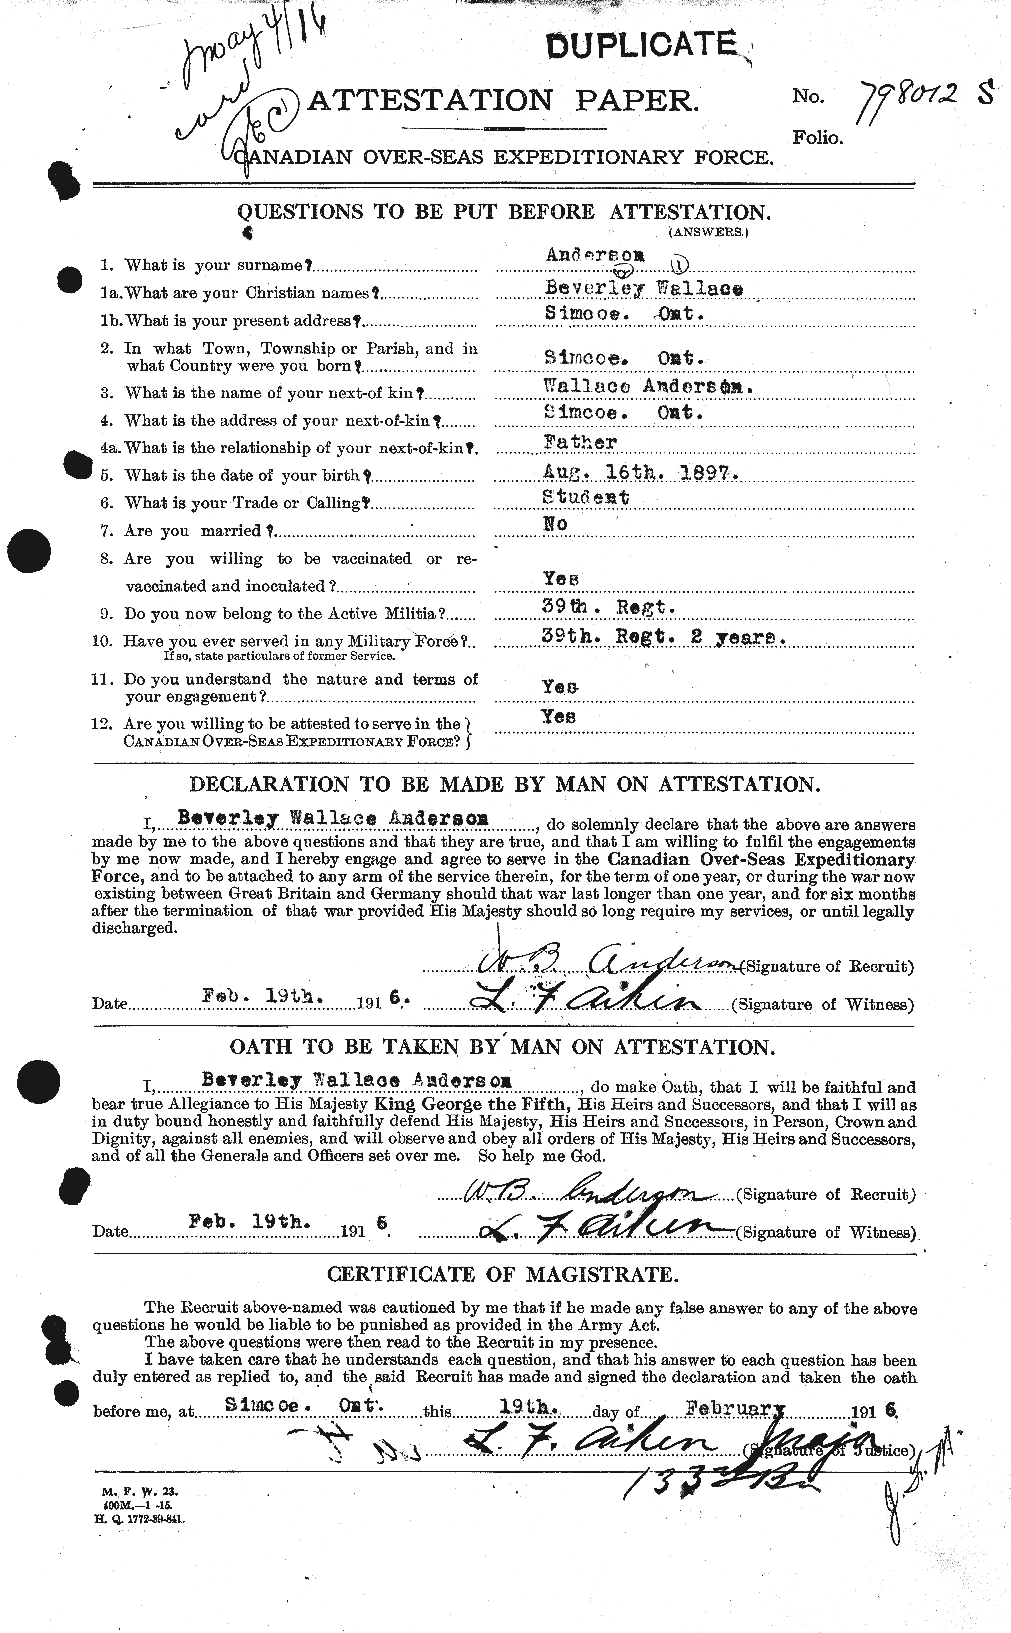 Dossiers du Personnel de la Première Guerre mondiale - CEC 209310a